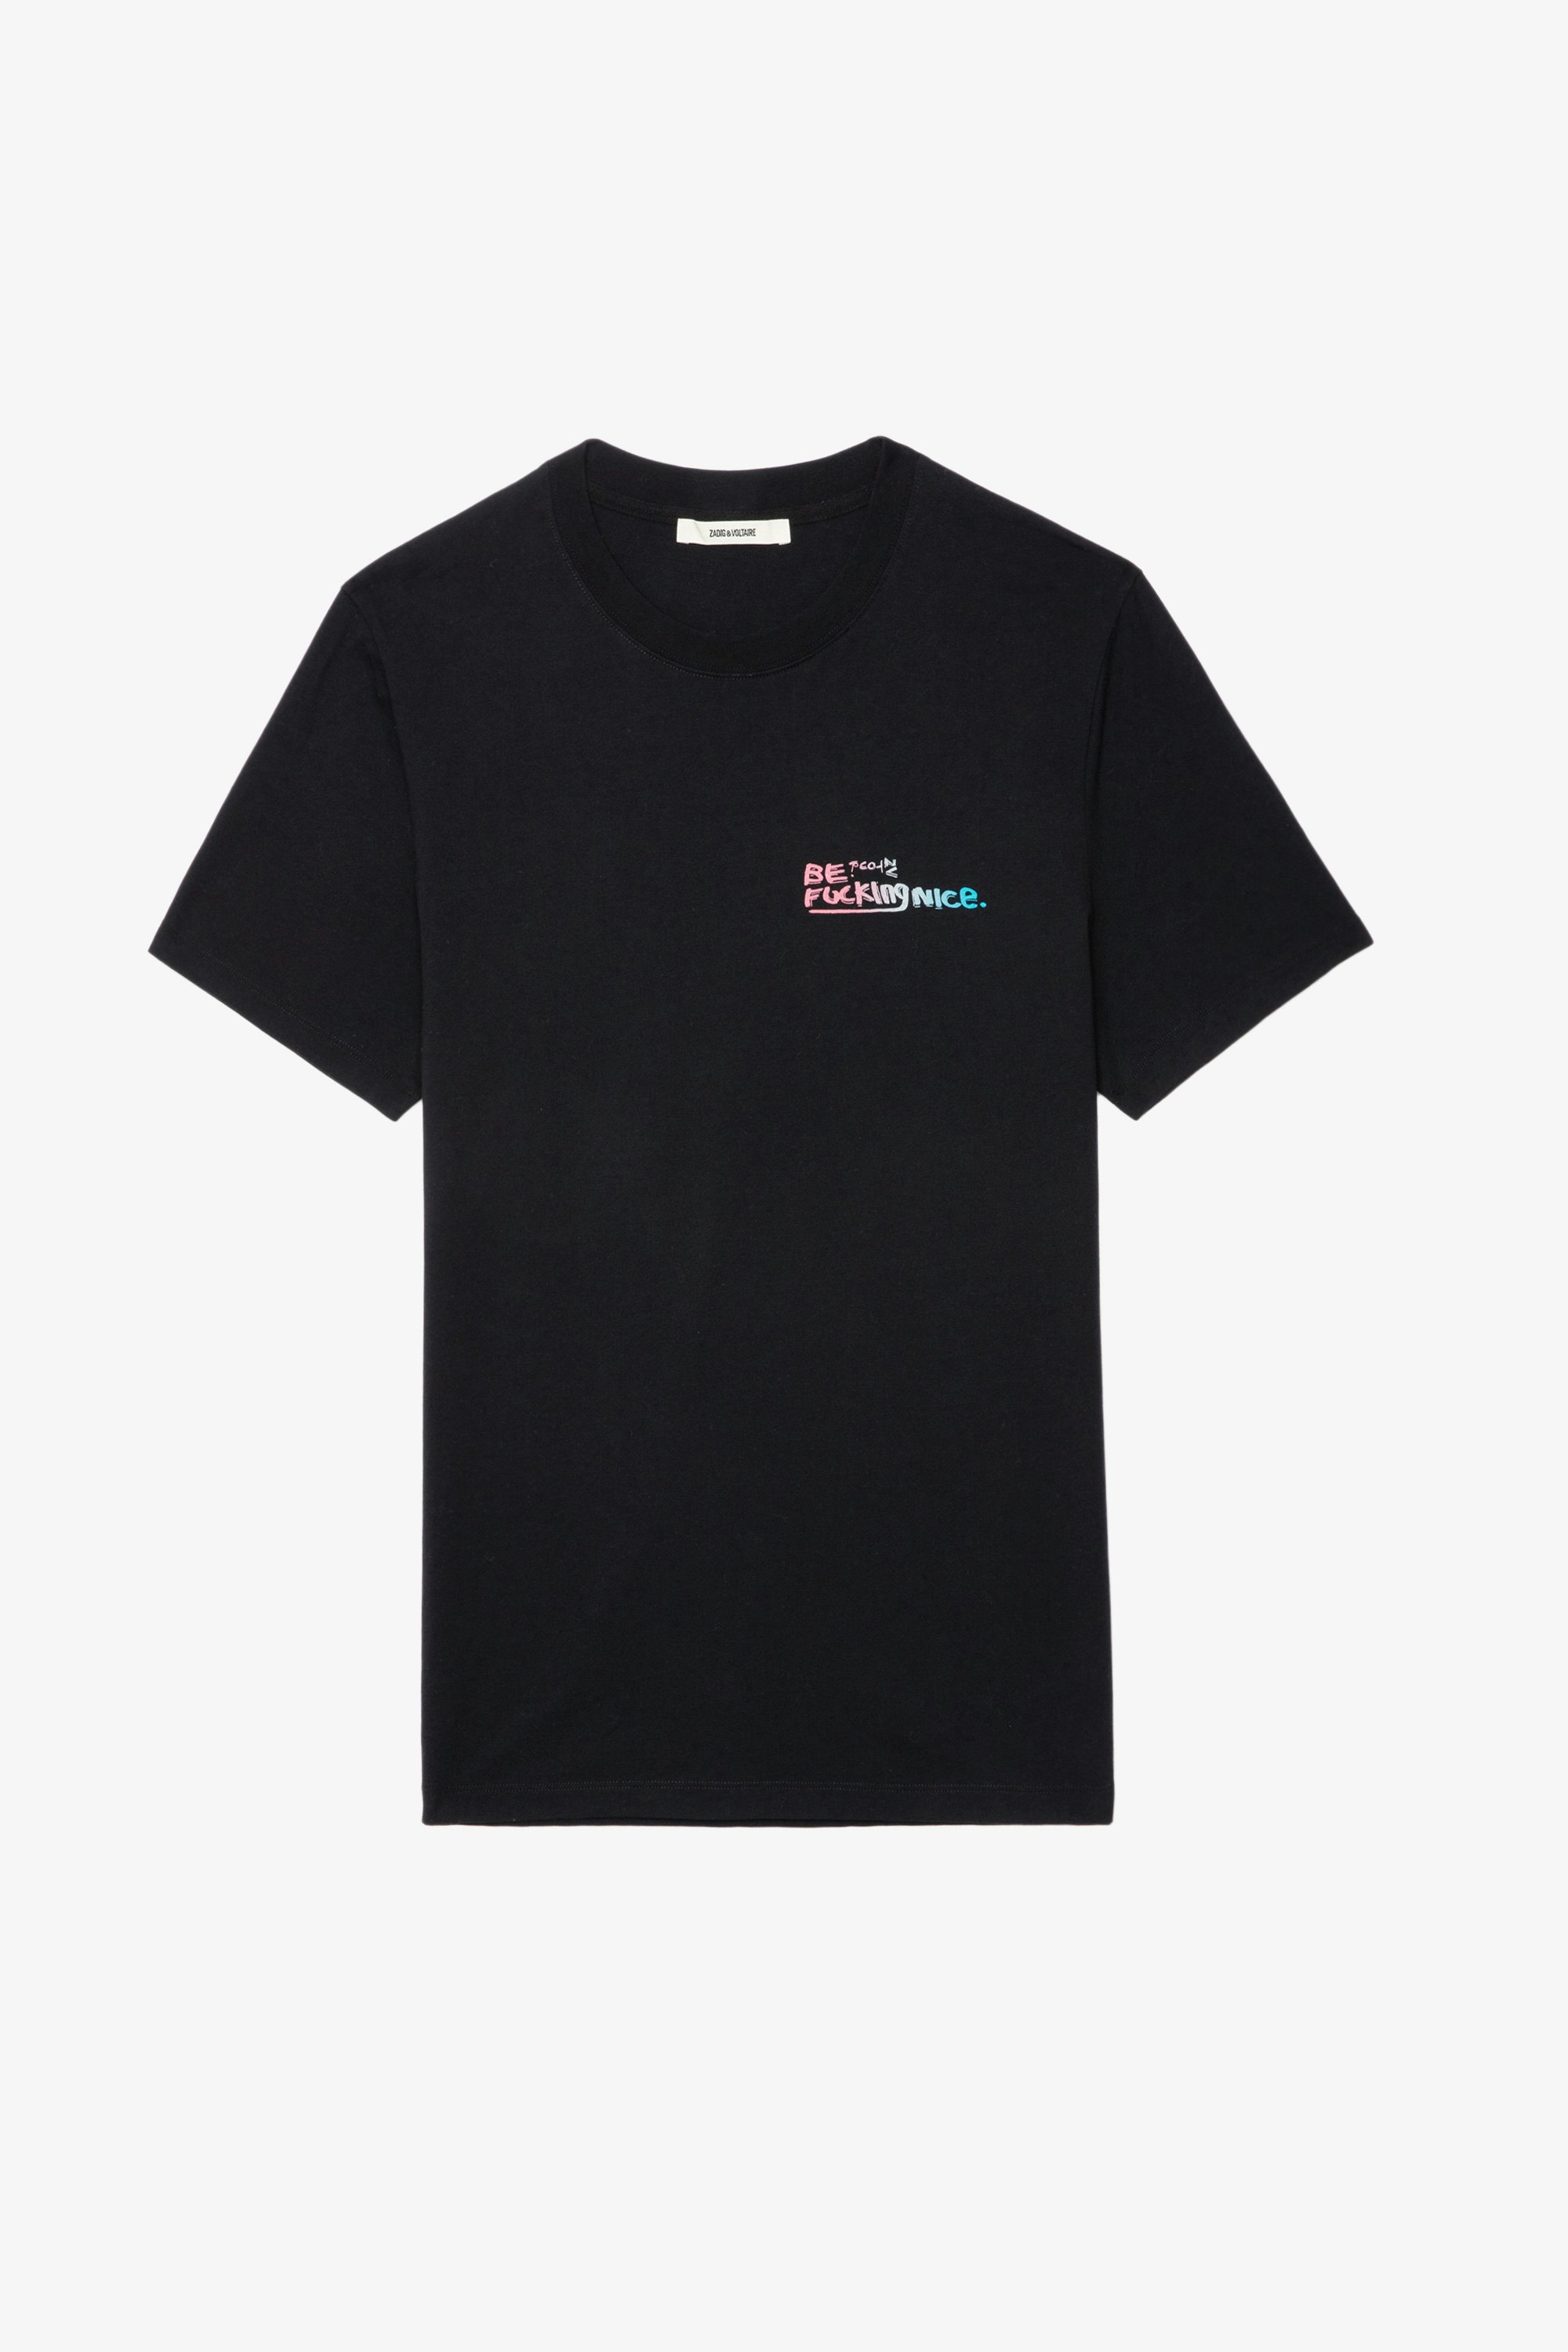 T-shirt Ted Photoprint - T-shirt en coton noir à imprimé photoprint Graffiti.